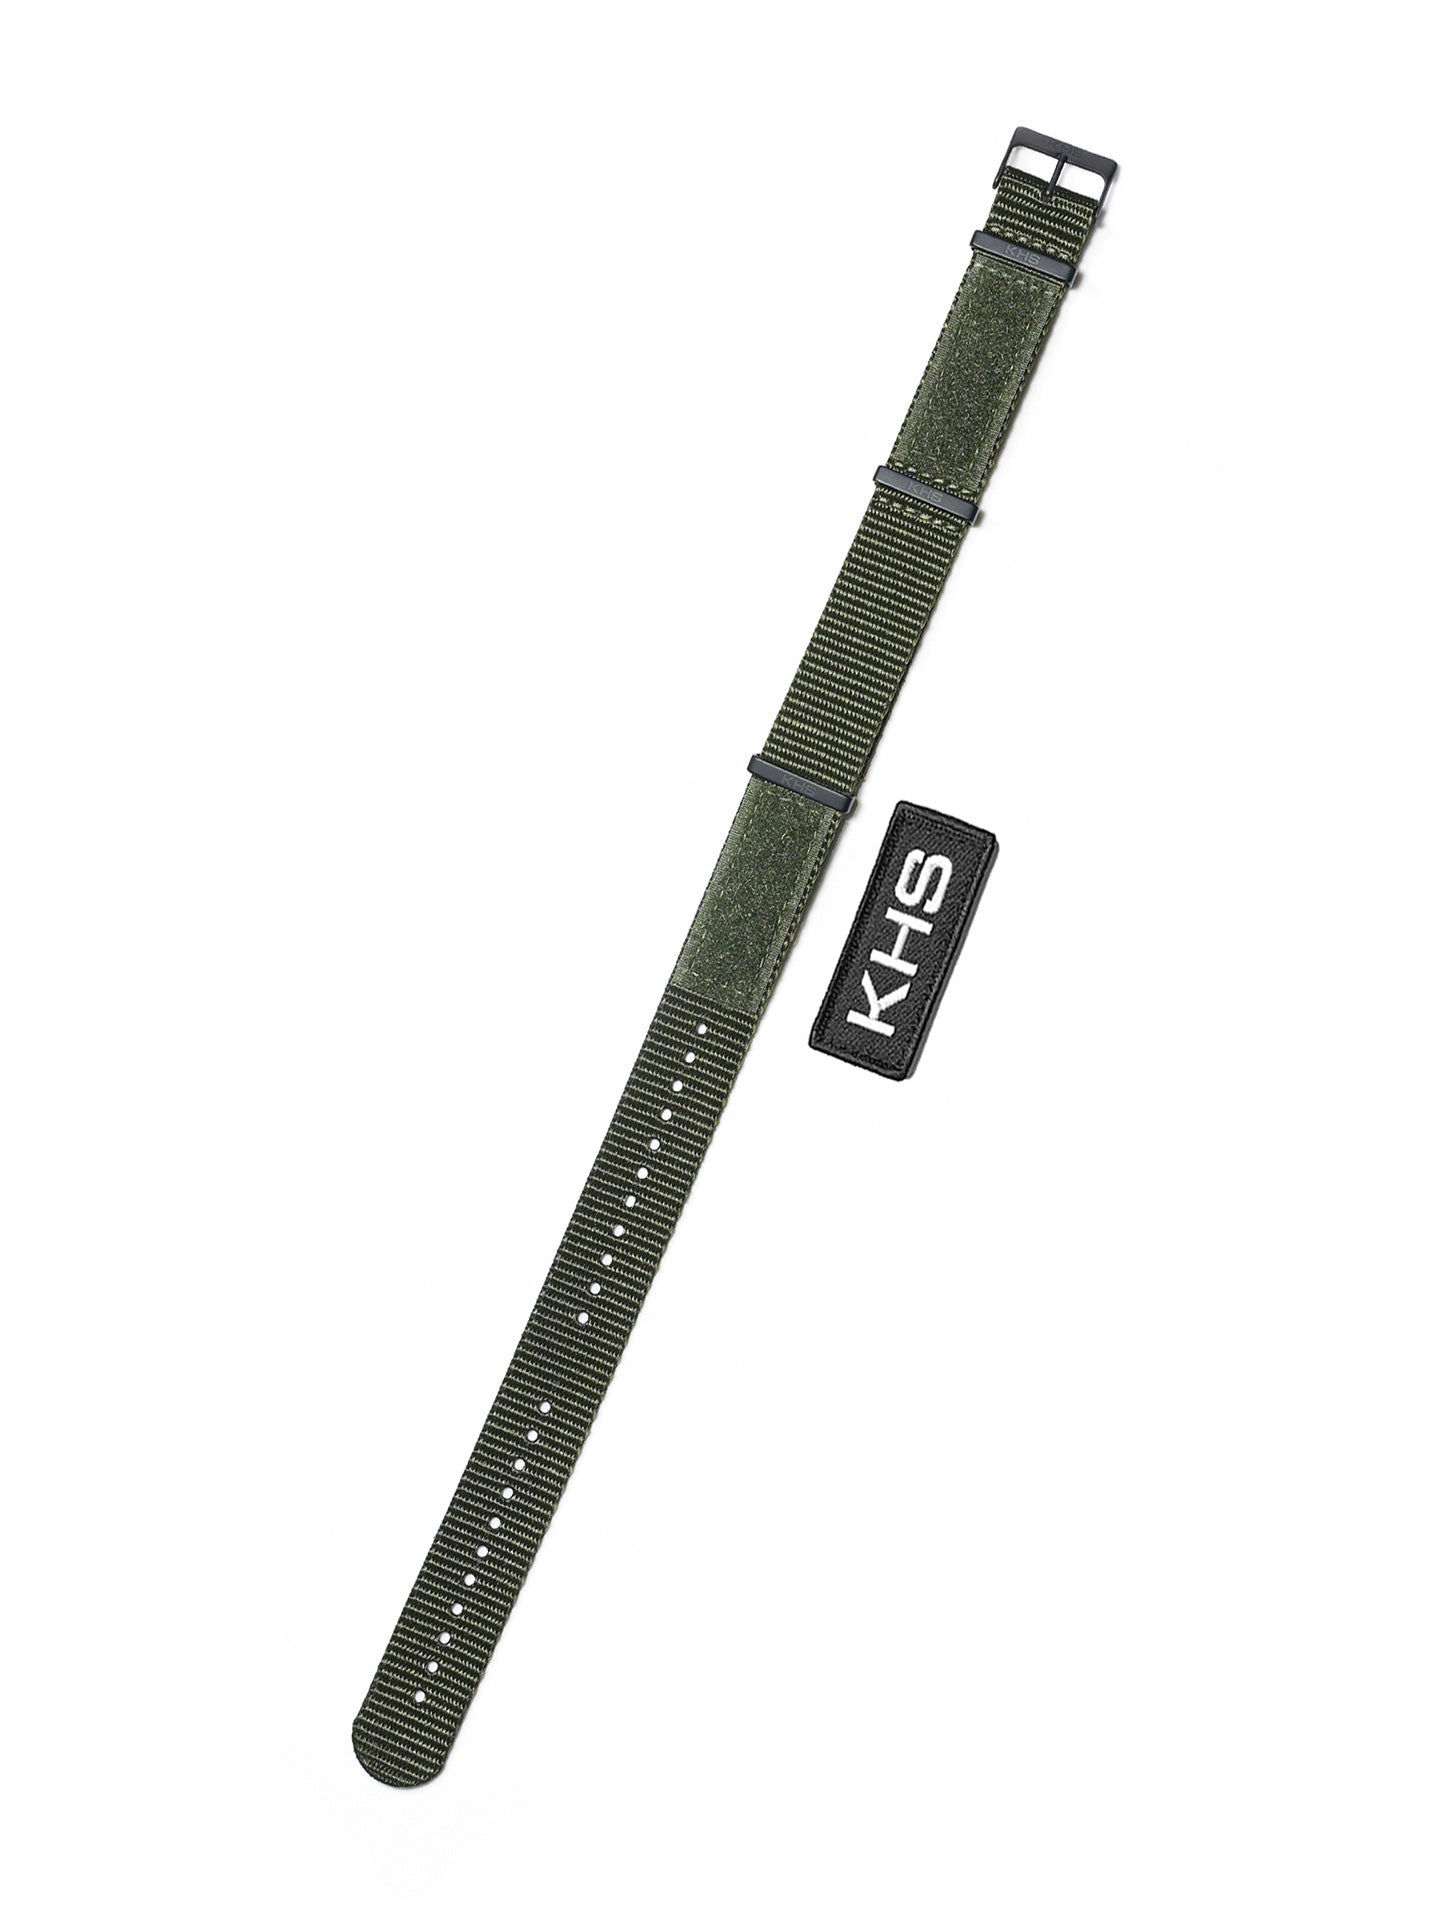 Natoband XTAC Oliv 22mm